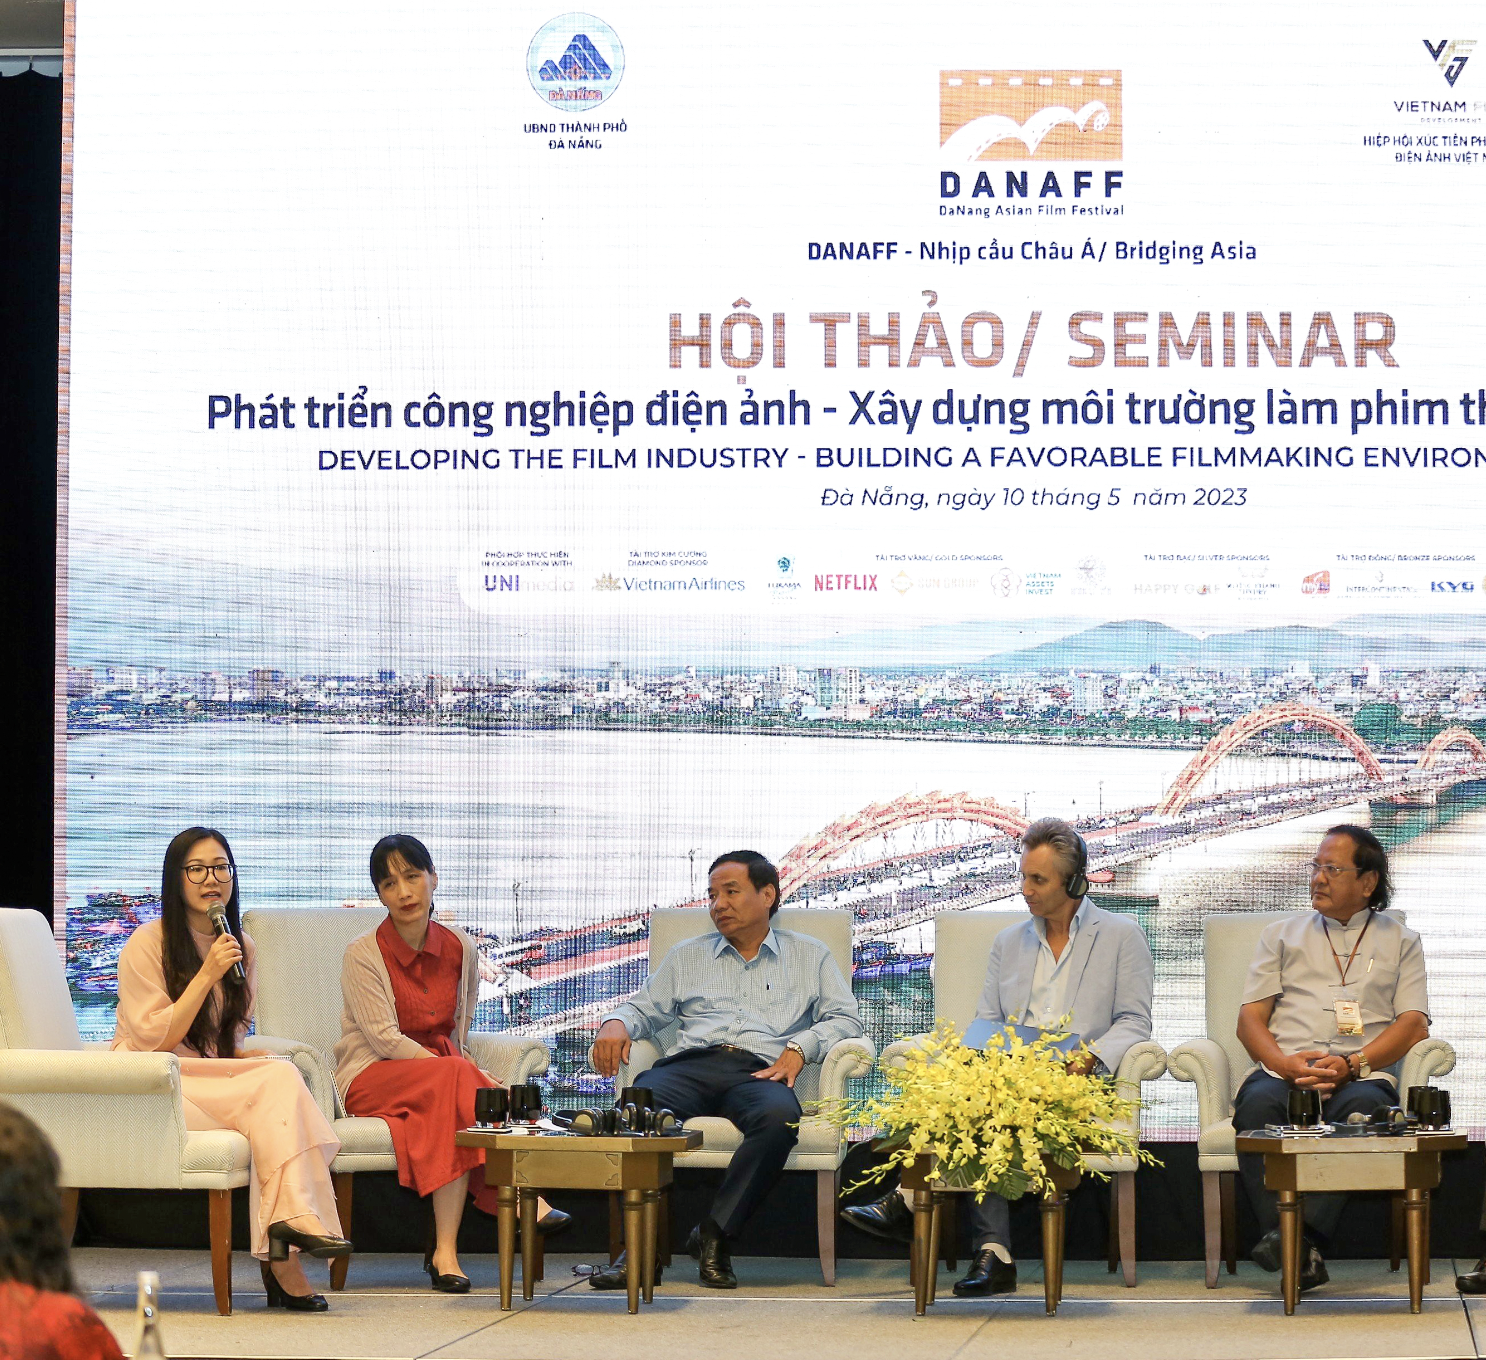 Nâng cao vai trò địa phương trong phát triển công nghiệp điện ảnh TP Đà Nẵng